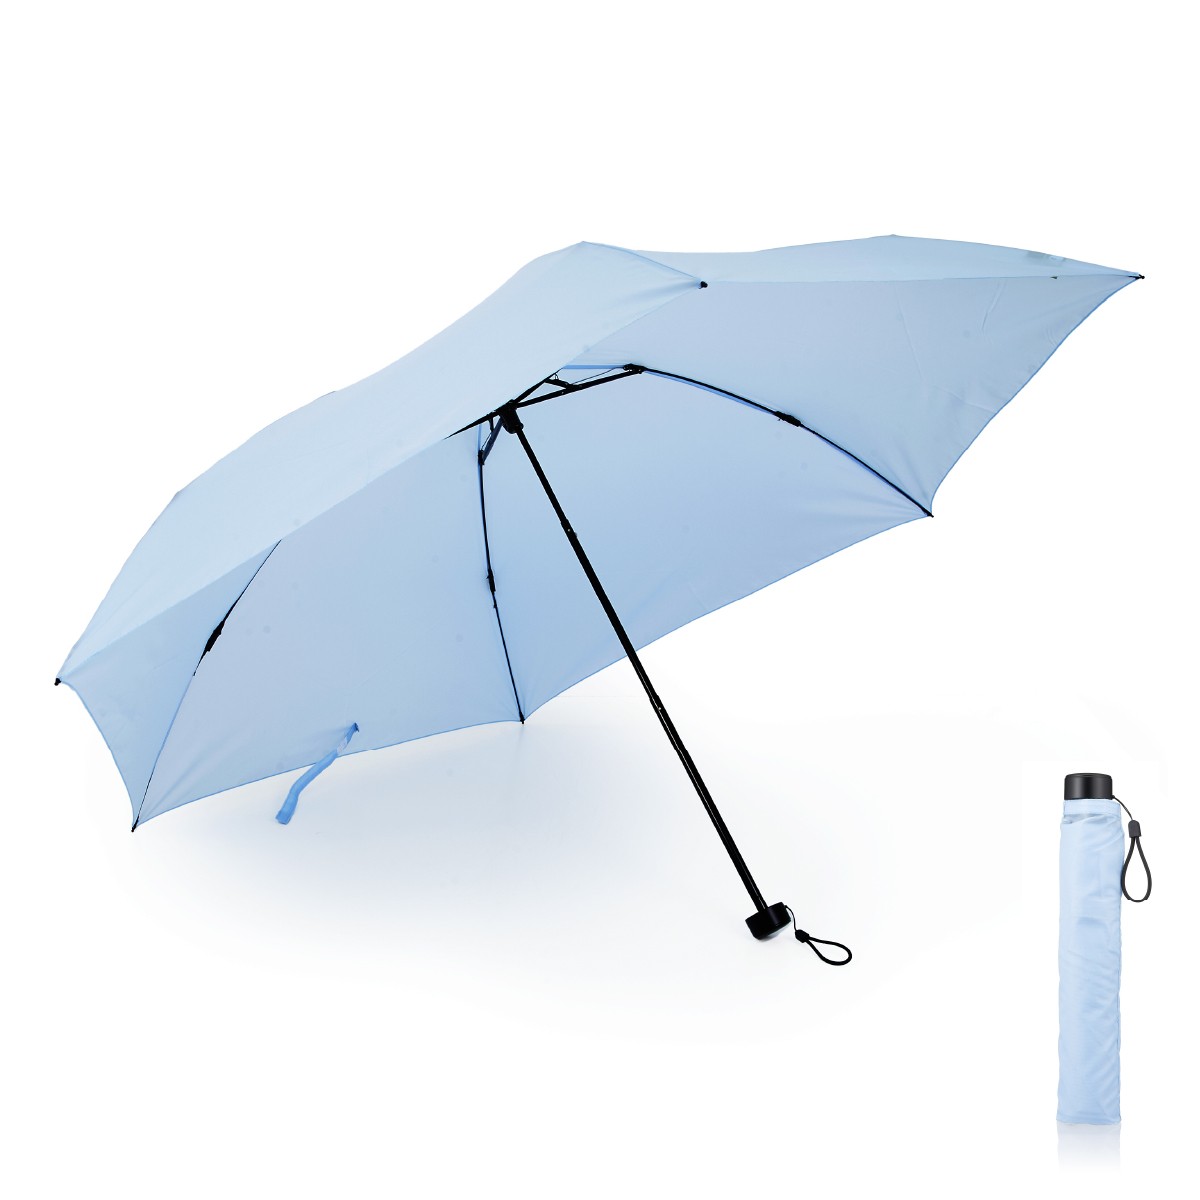 発売モデル 折りたたみ傘